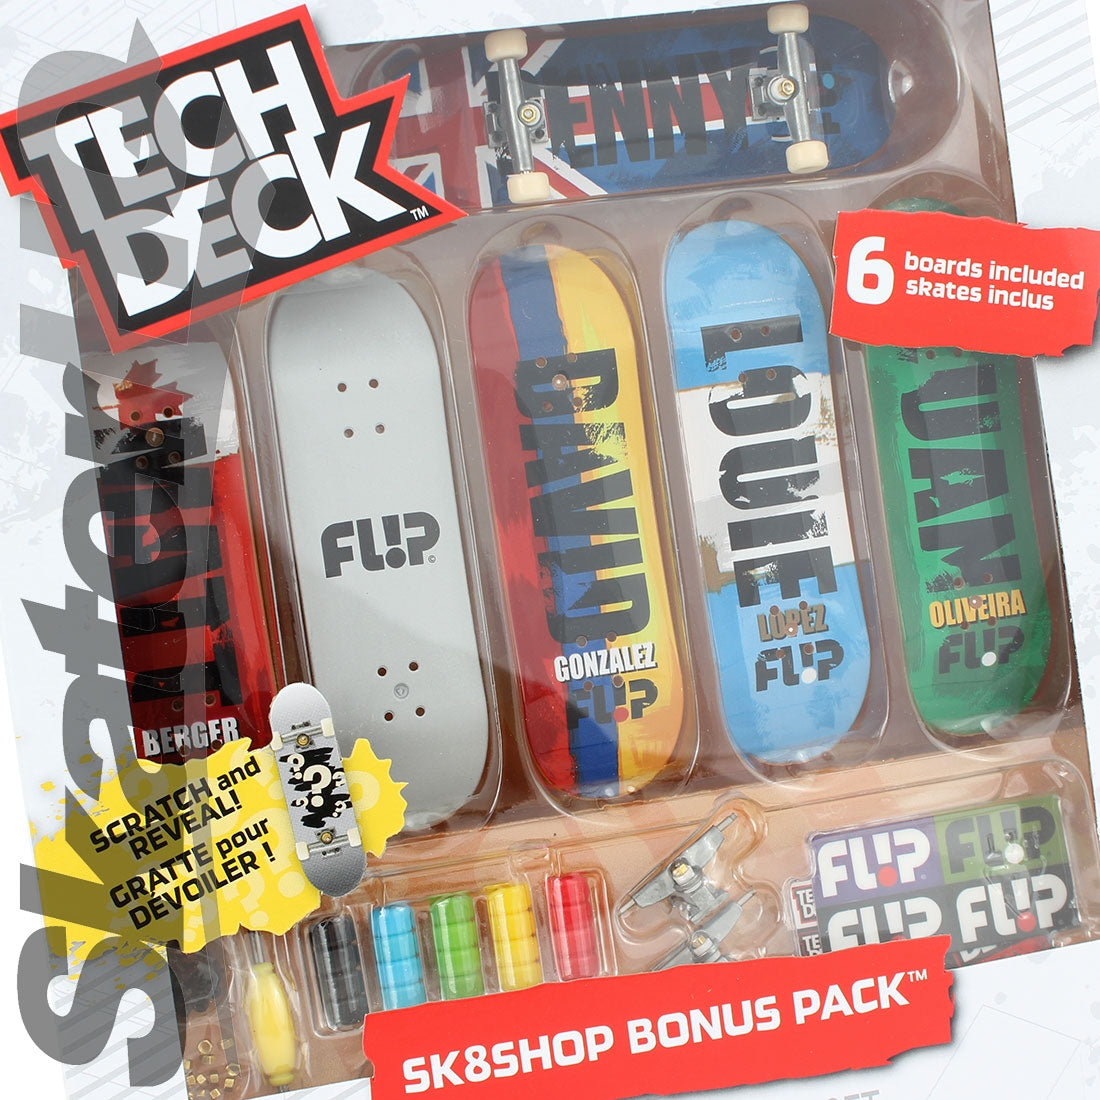 Tech Deck Sk8shop Pack - Flip Skateboard Accessories